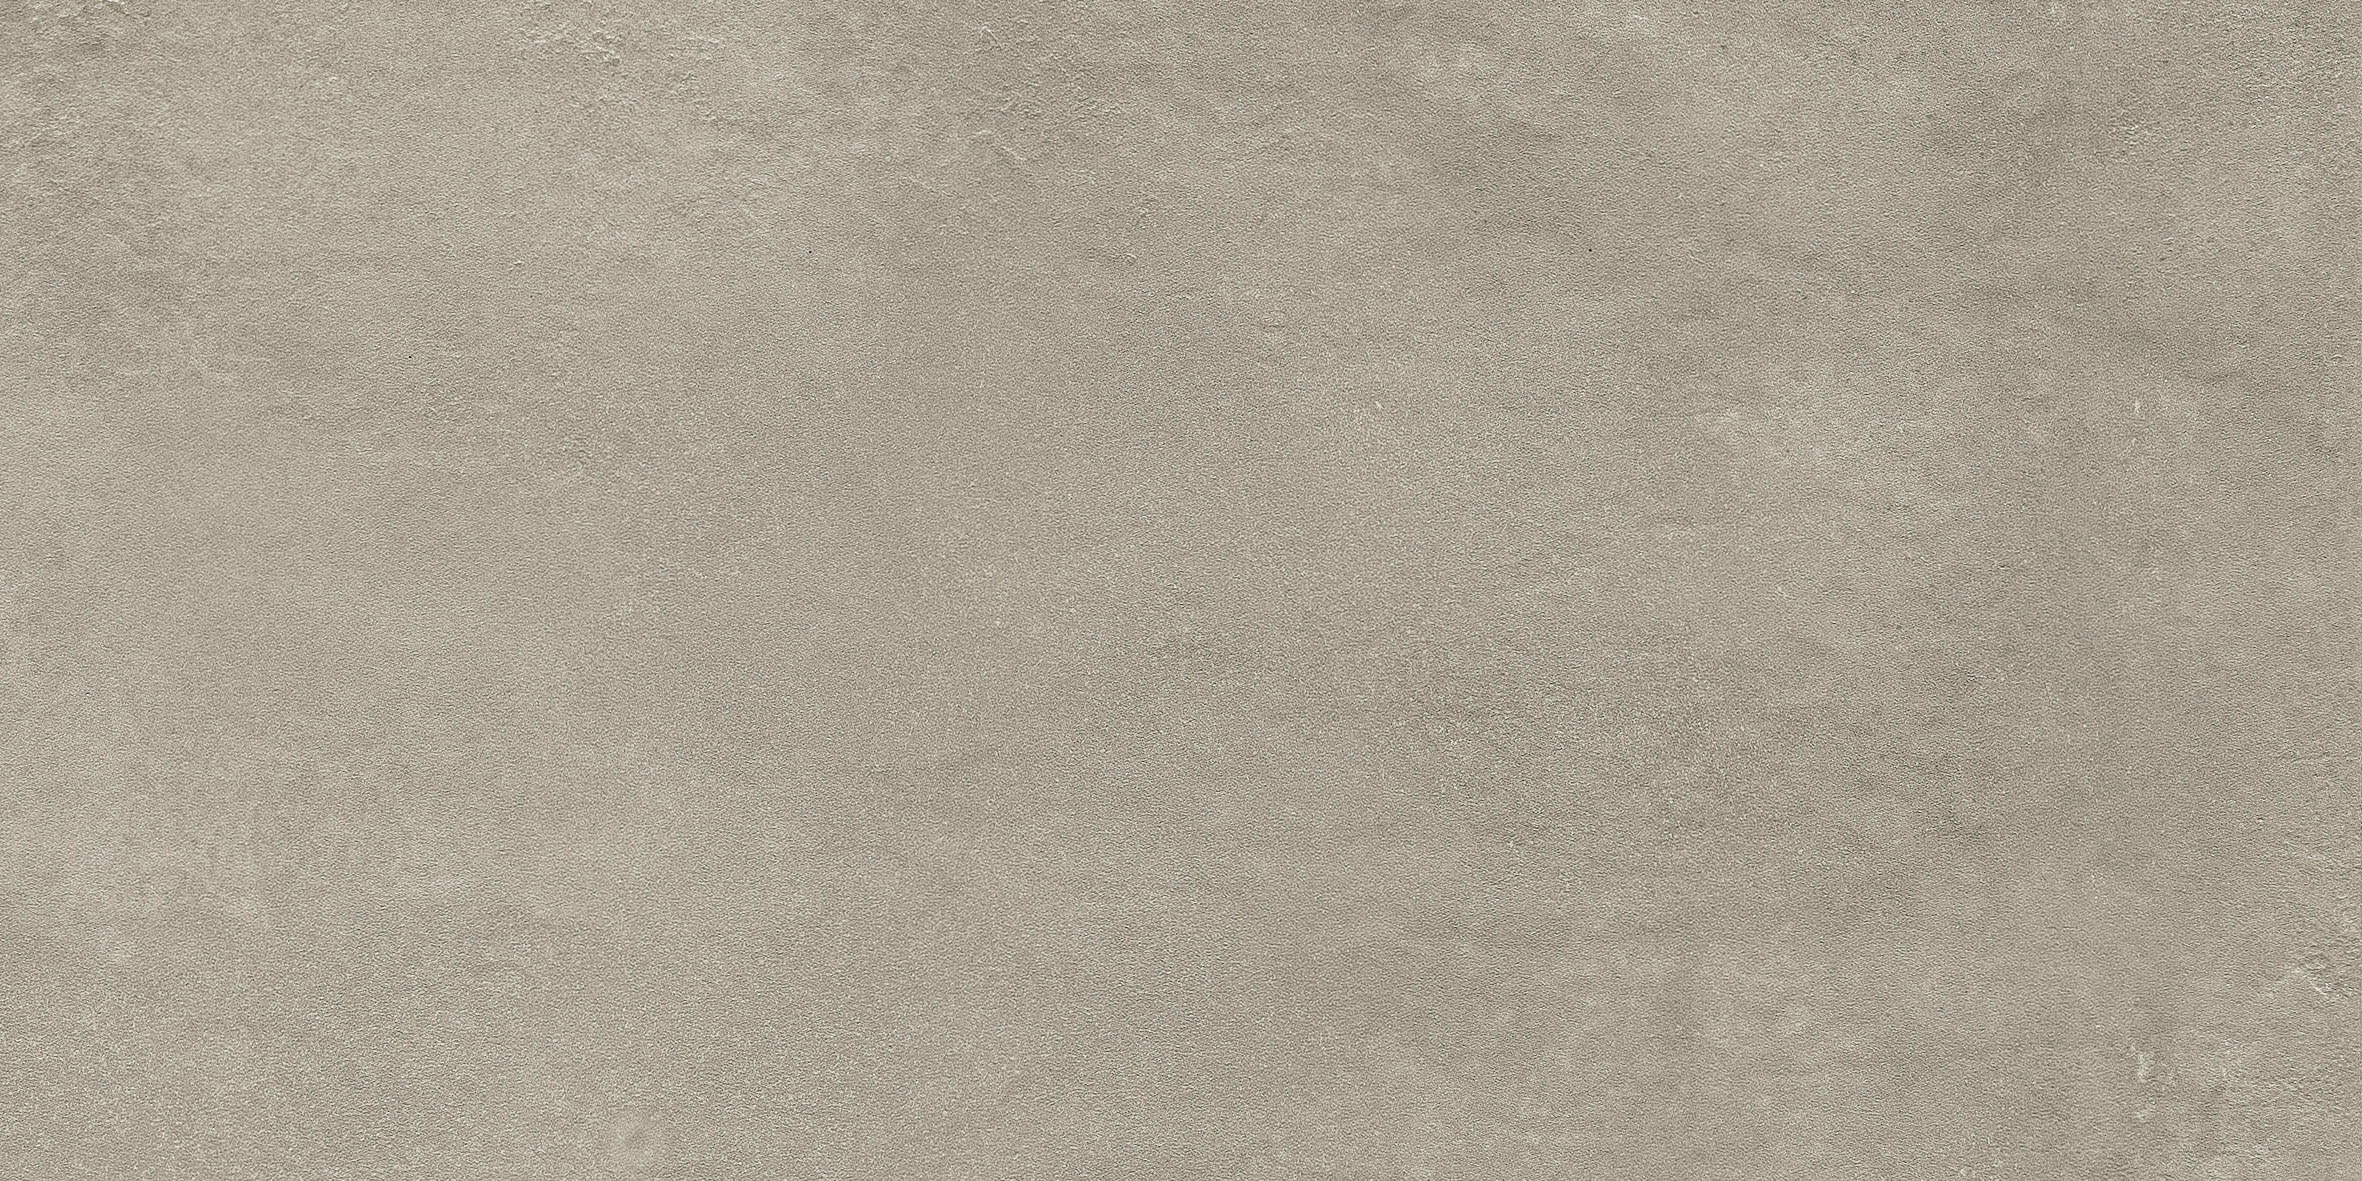 Bodenfliese,Wandfliese Florim Studios Of Casamood Sand Matt – Naturale Sand 758032 matt natur 60x120cm rektifiziert 9mm